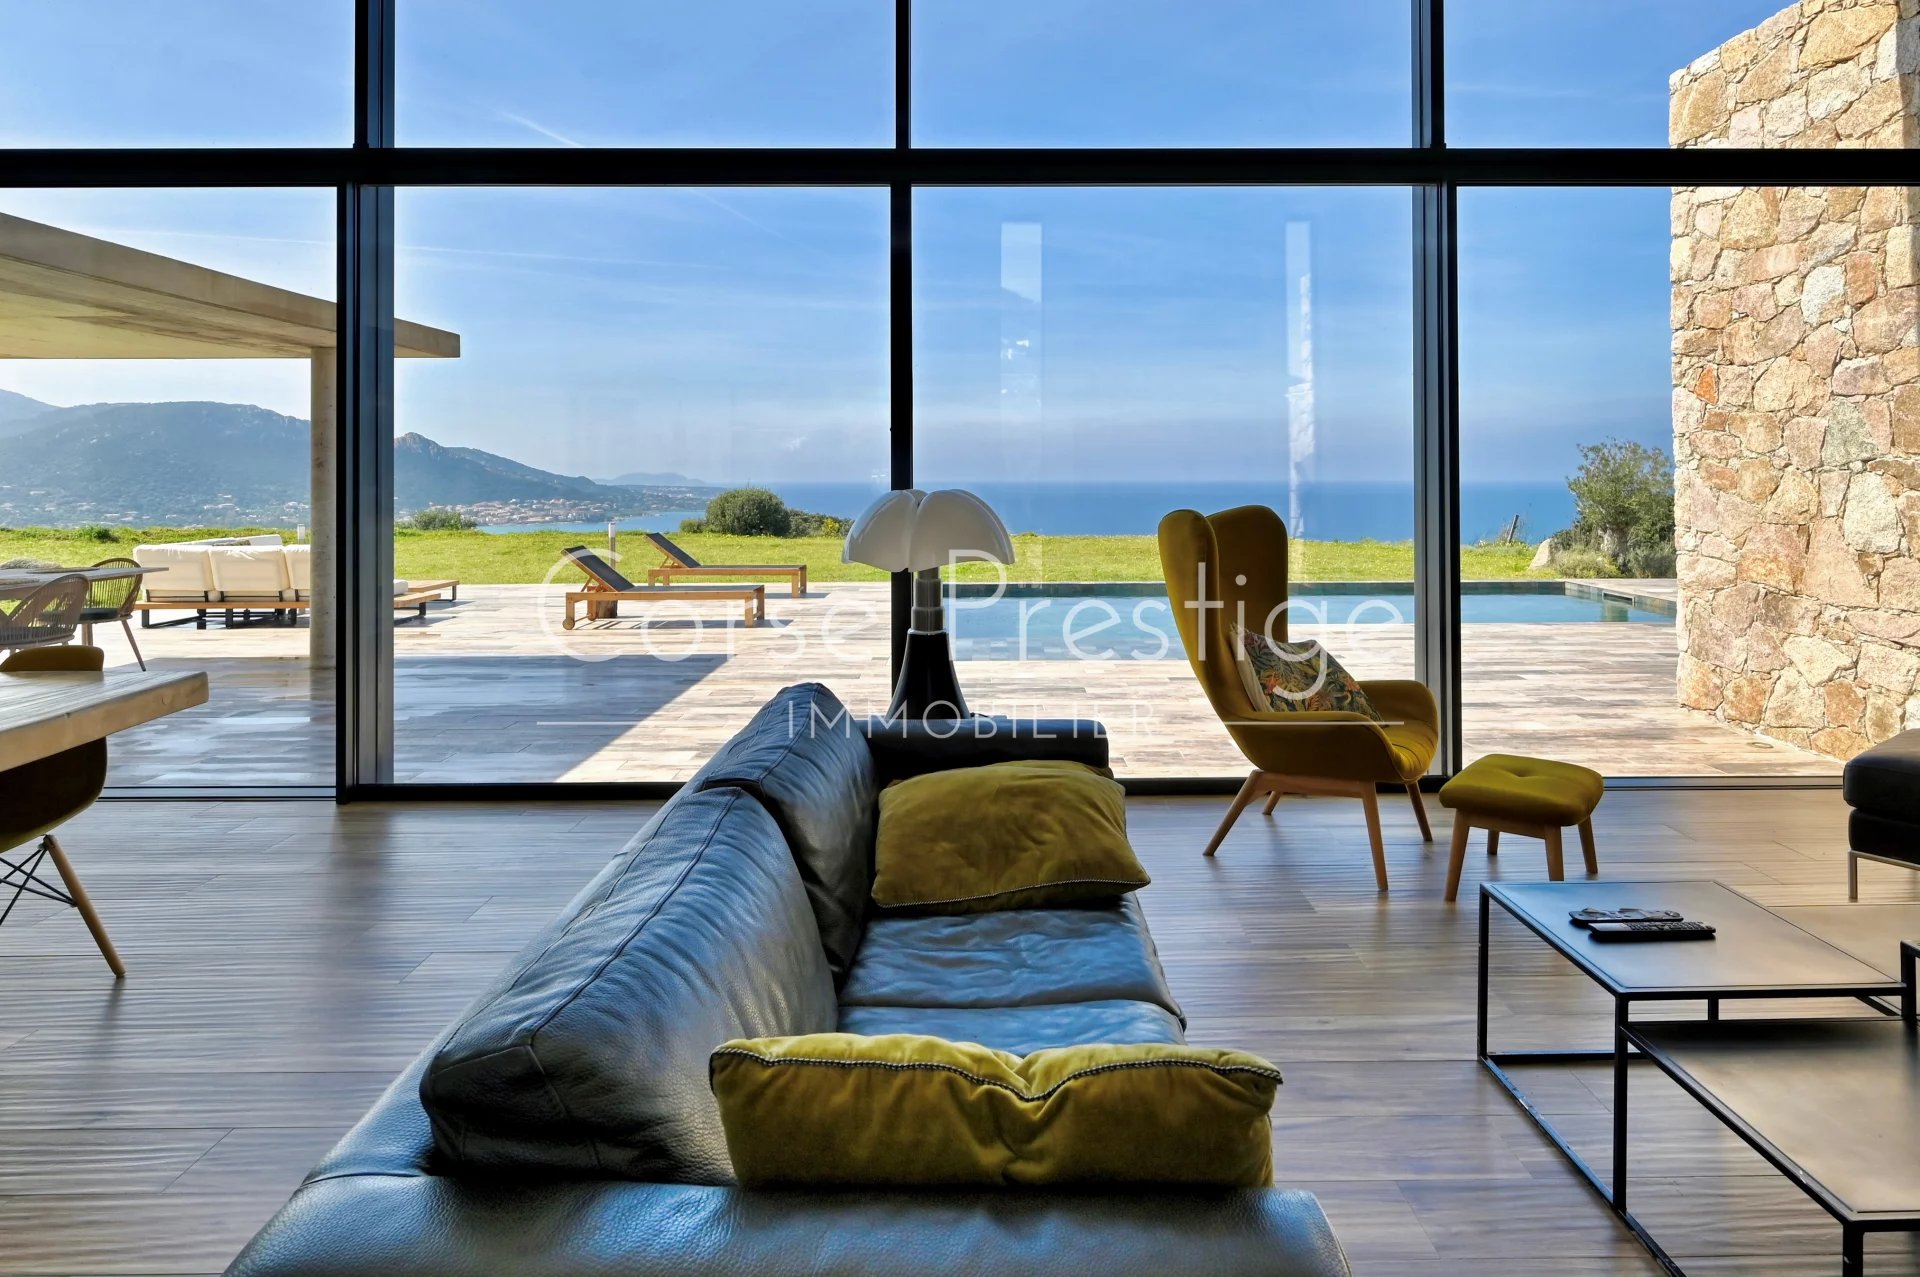 contemporary architect villa for sale in corsica - breathtaking sea views - corbara, north corsica image4